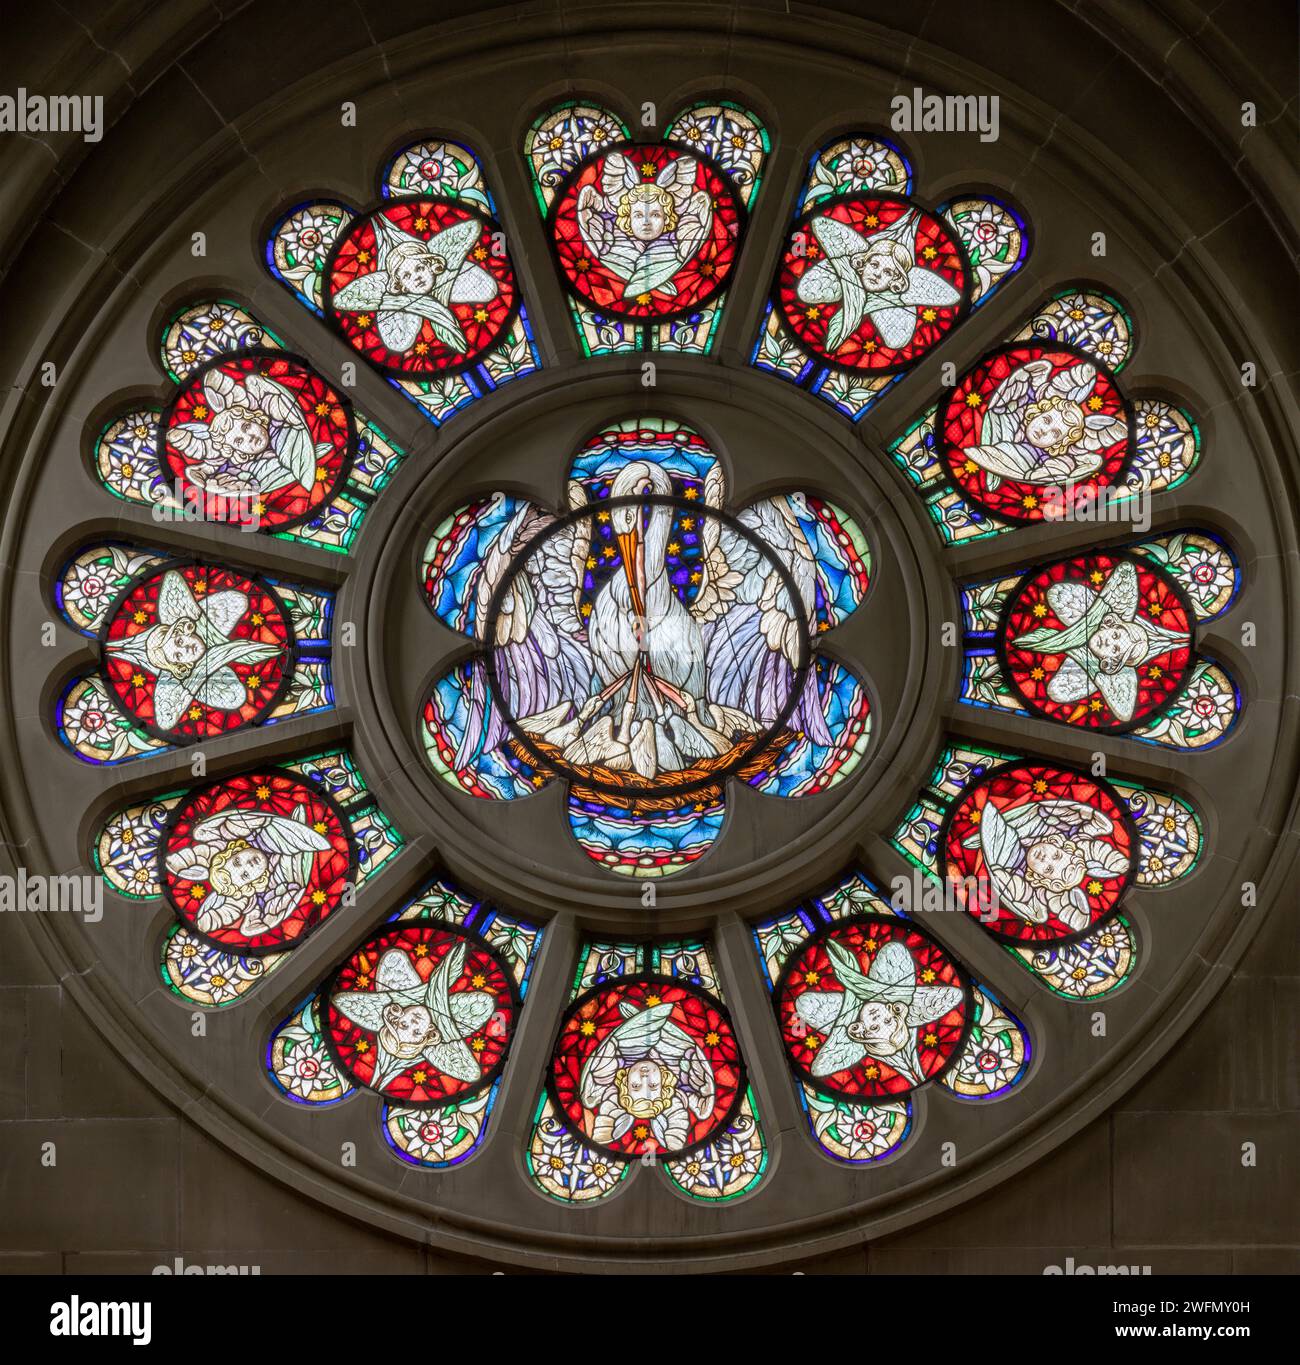 BERNE, SUISSE - JUNY 27, 2022 : le pélican comme symbole de l'offre de Jésus sur la rosette de vitrail dans l'église Dreifaltigkeitskirche Banque D'Images